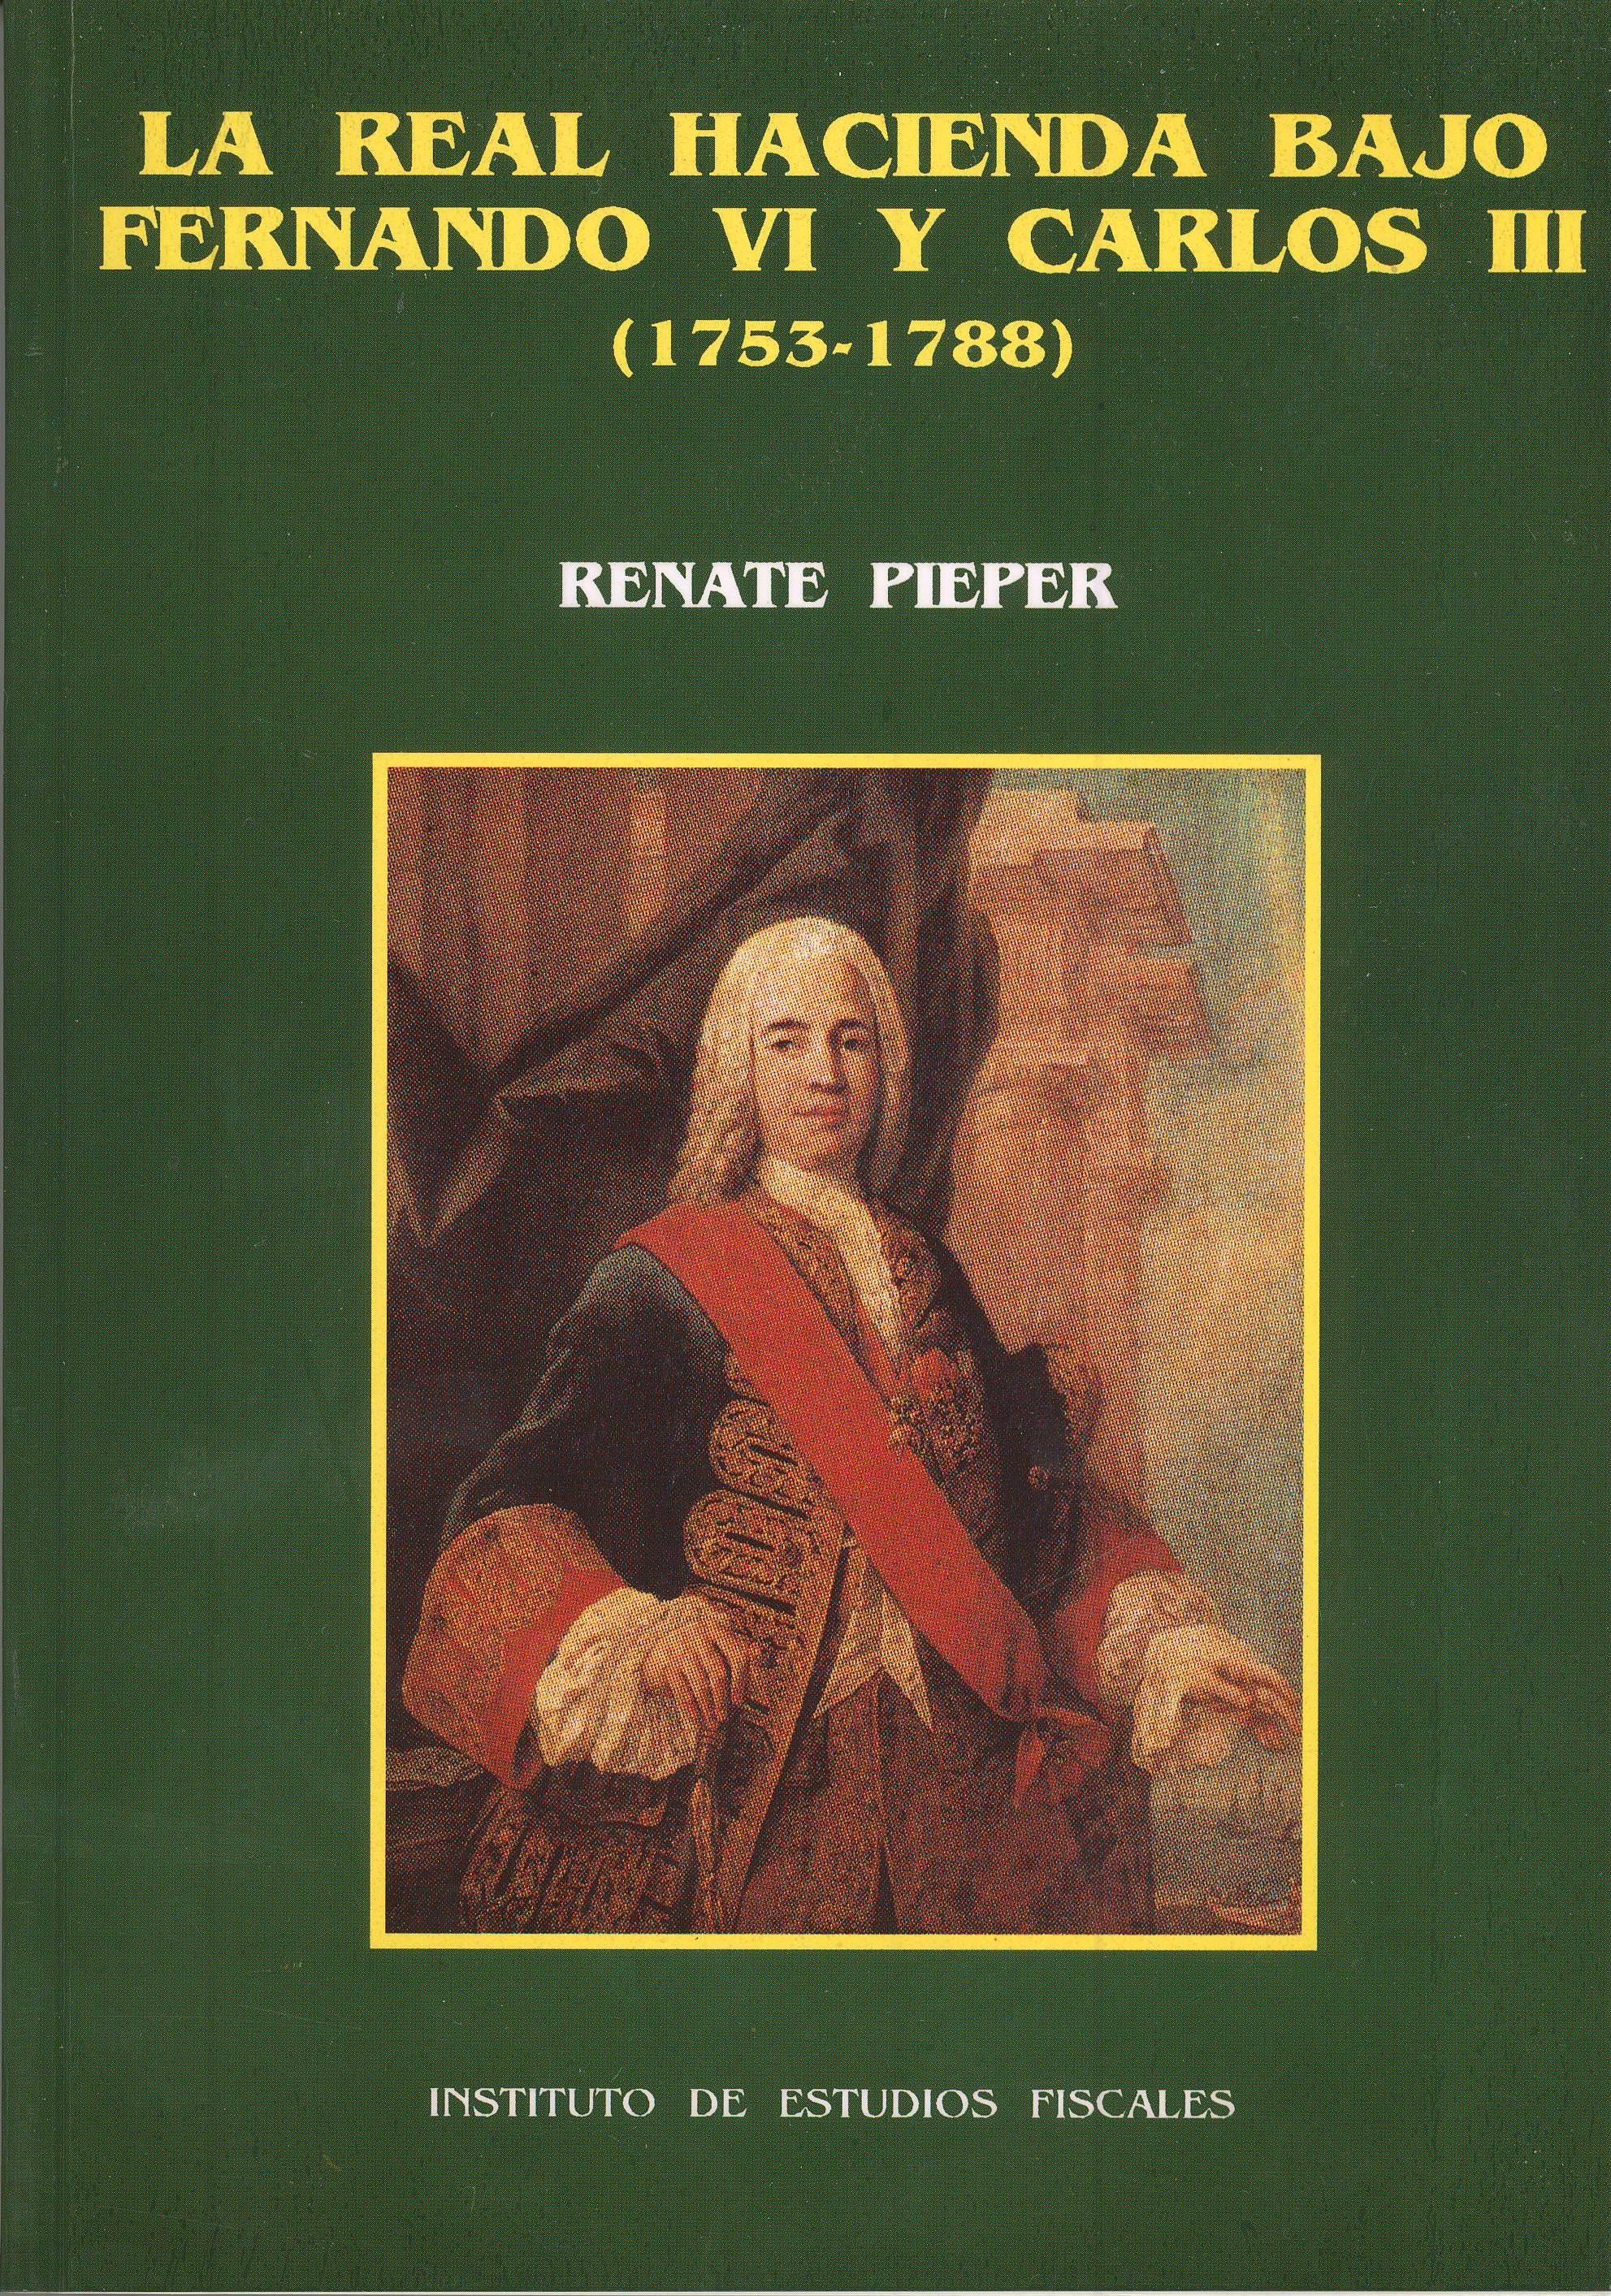 La real hacienda bajo Fernando VI y Carlos III (1753-1788) "Repercusiones económicas y sociales"